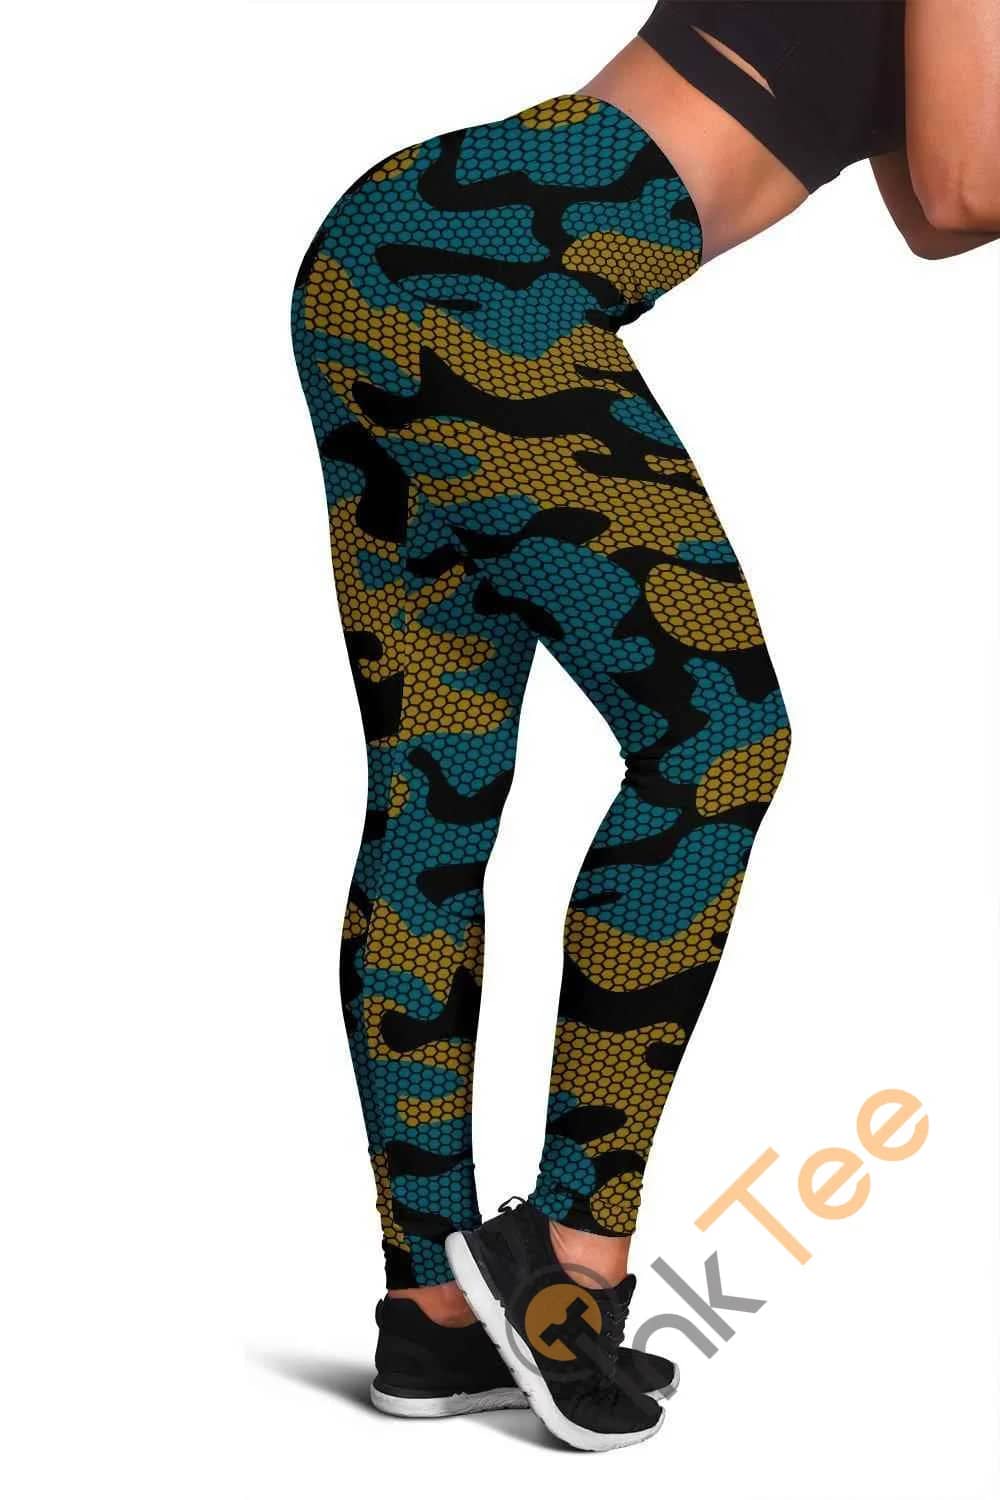 Jacksonville Jaguars Inspired Hex Camo 3D All Over Print For Yoga Fitness Fashion Women's Leggings